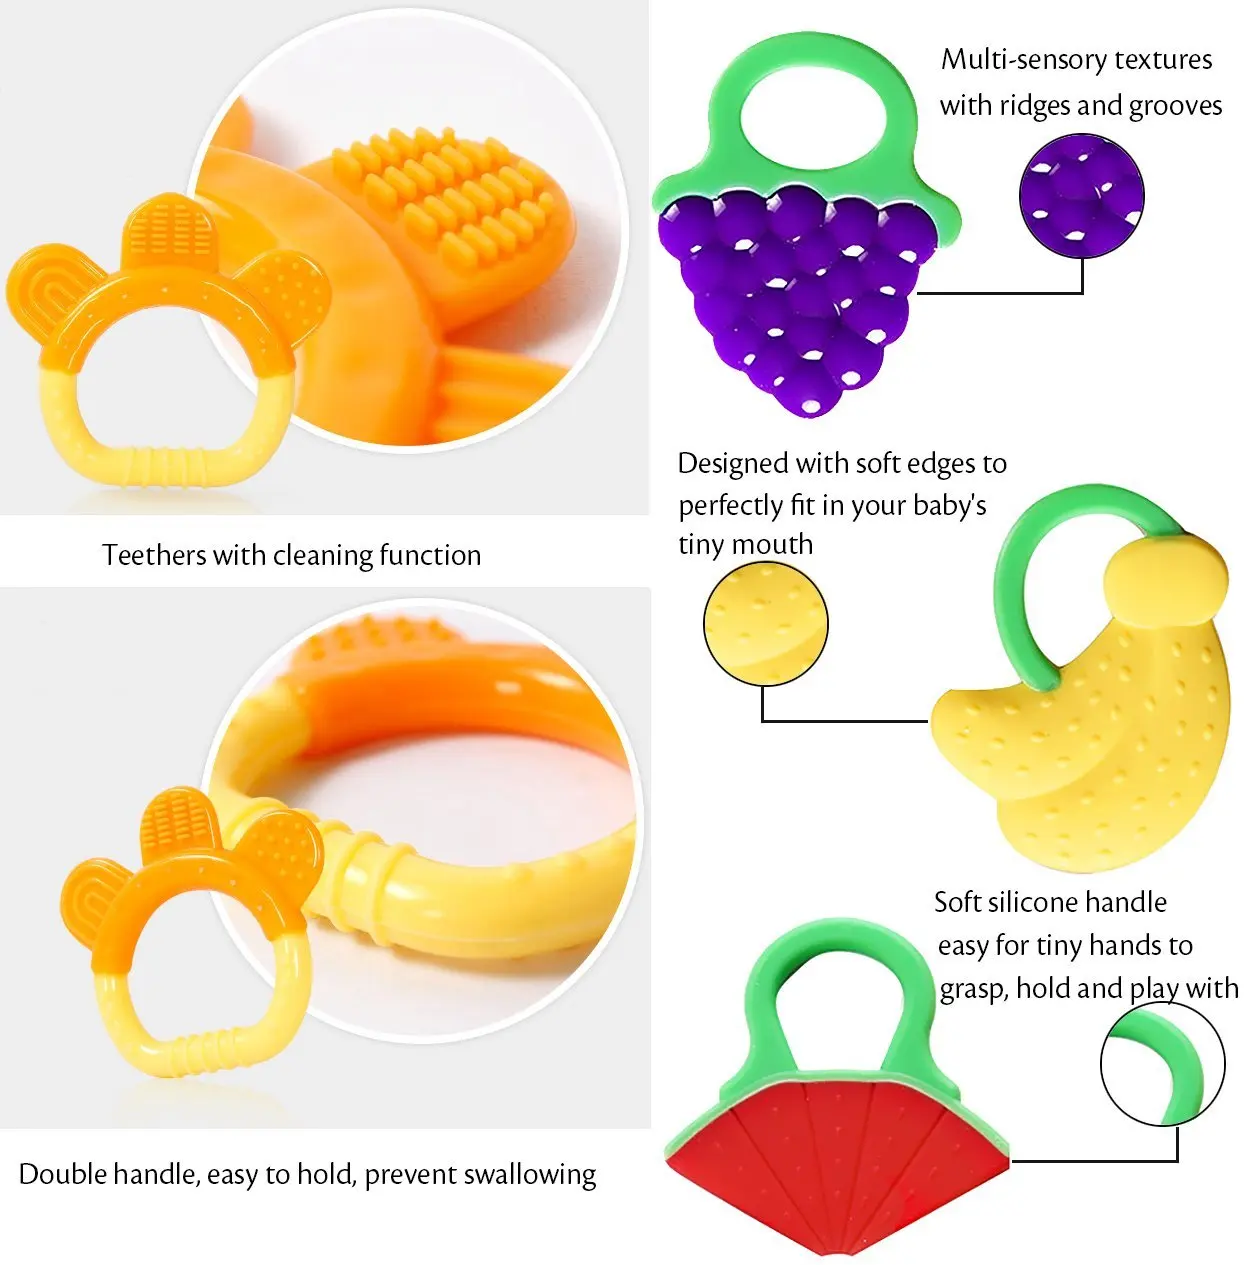 Прорезыватели для зубов BPA Free натуральный органический Морозильник Безопасный Набор для прорезывания зубов для детей от 3 до 12 месяцев, младенцев, малышей(7 шт. в упаковке